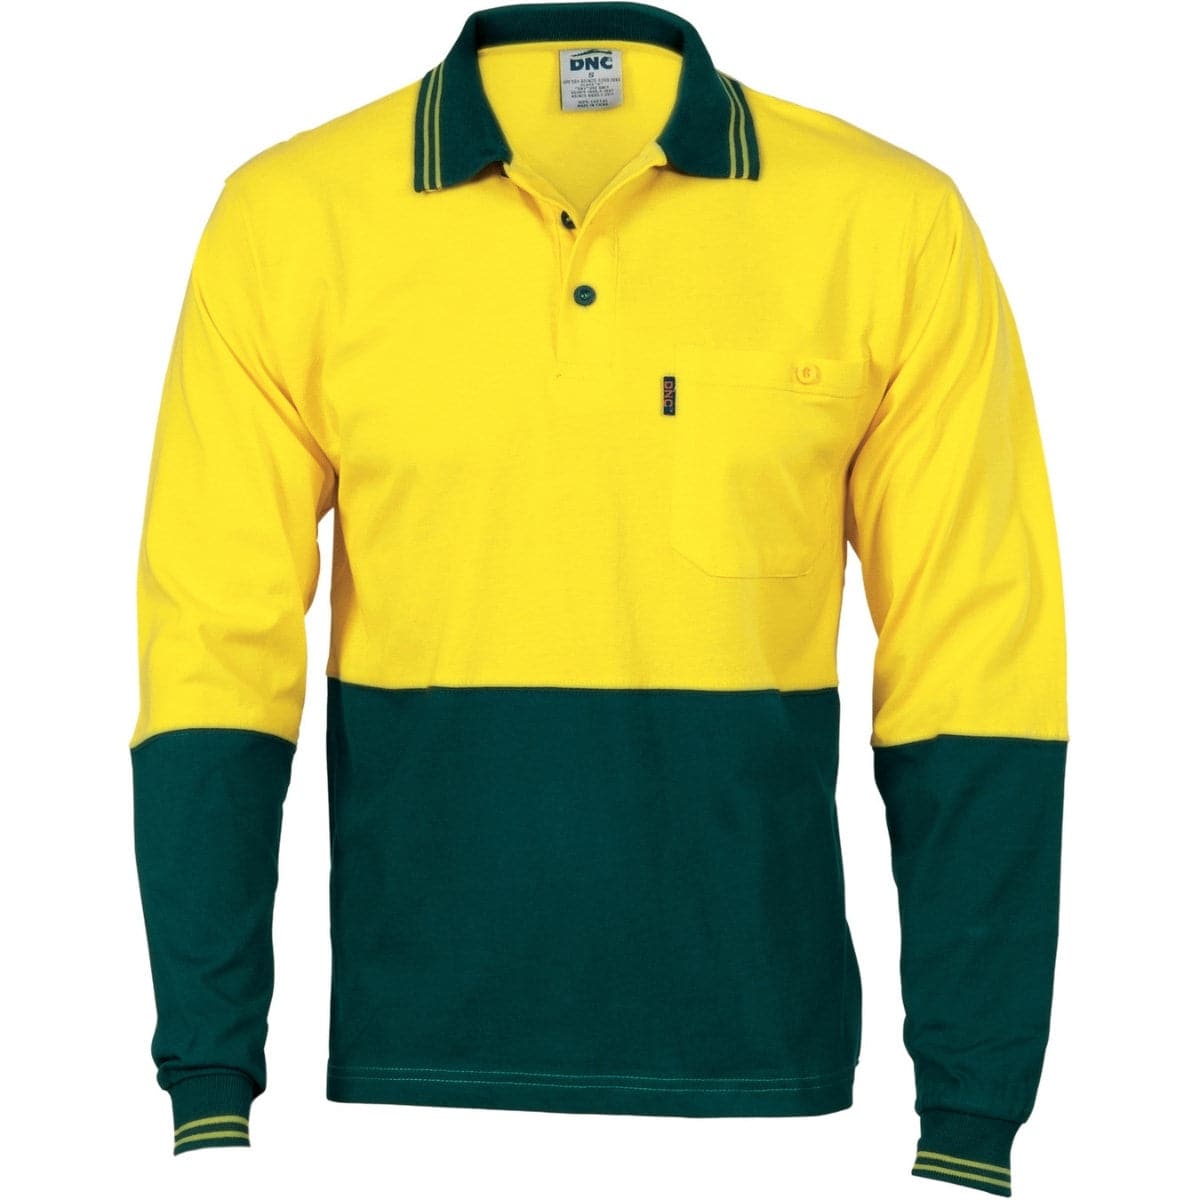 DNC HiVis Cool-Breeze Cotton Jersey Polo Shirt With Under Arm Cotton Mesh - L/S 3846